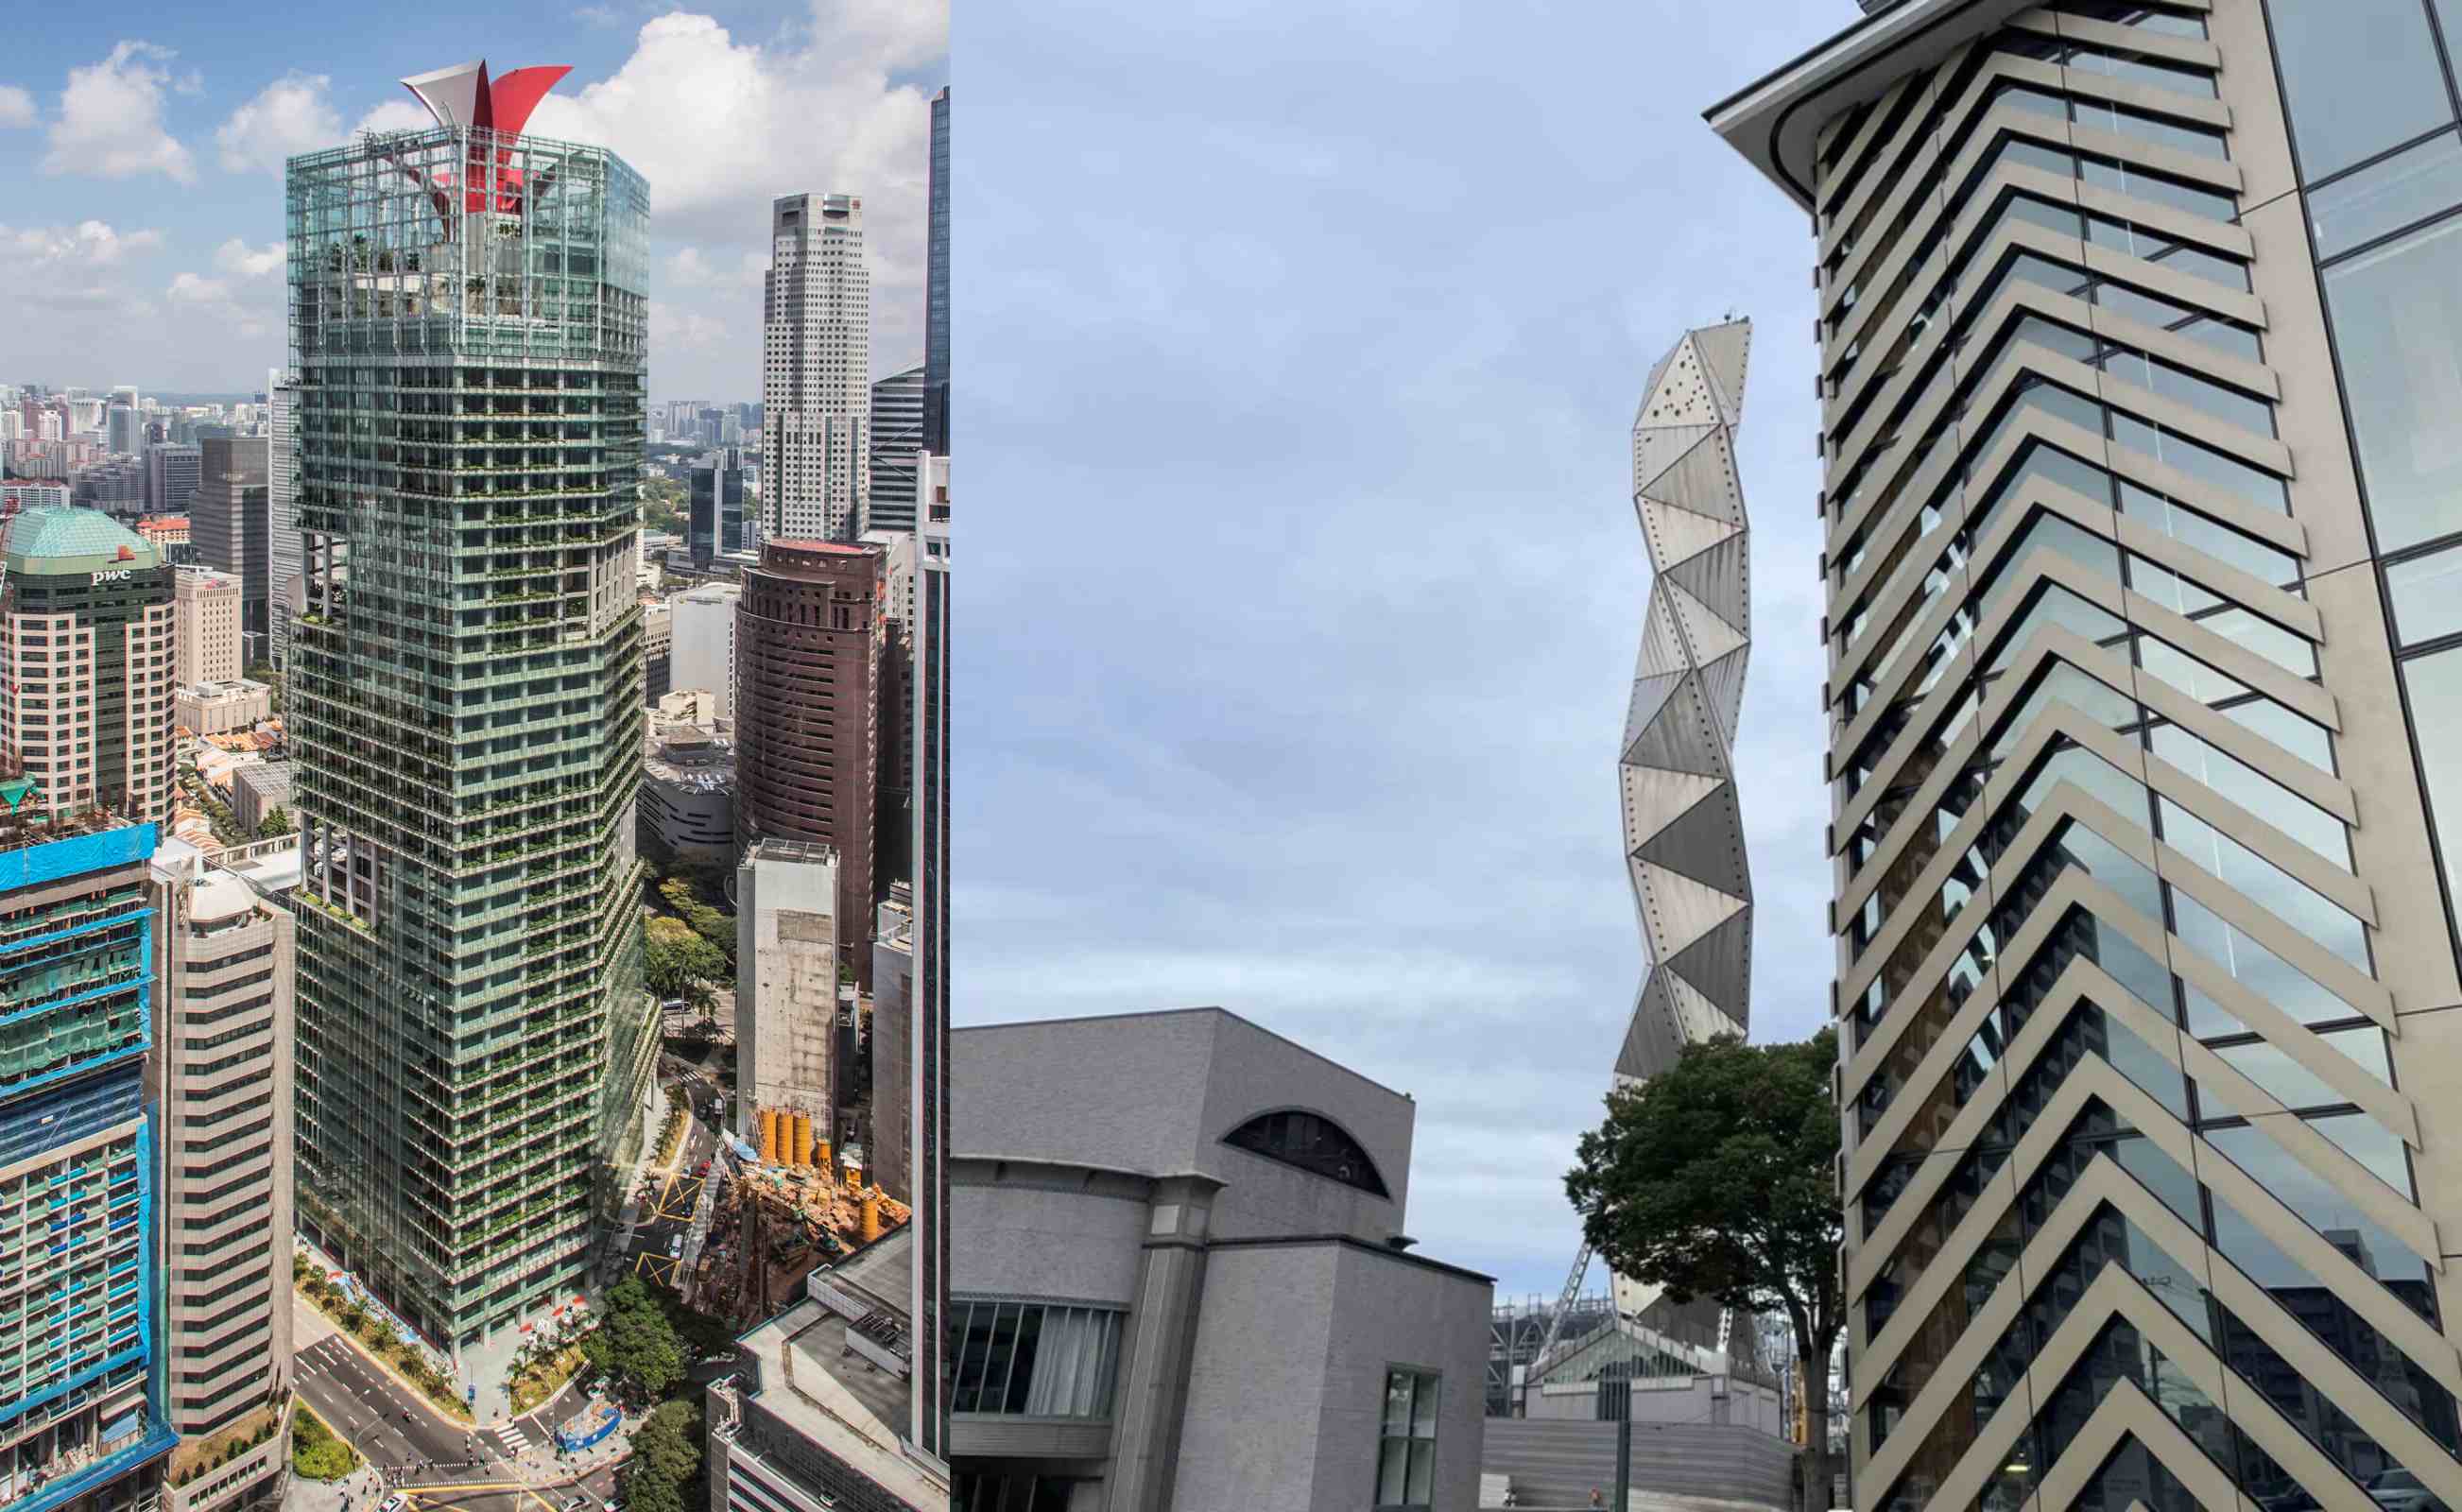 이토 씨의 건축엔 종종 조형물이 따라붙기도 하는데요. 이번엔 바로 옆 '미토예술관'의 조형 작품이 대신해주고 있어요.(右) 그리고 싱가폴 고층 빌딩 CAPITA GREEN 꼭대기의 빨간색 조형물은 단지 장식이 아니라 외부의 공기가 건물 내부로 통하게 하는 배기 기능을 가져요.